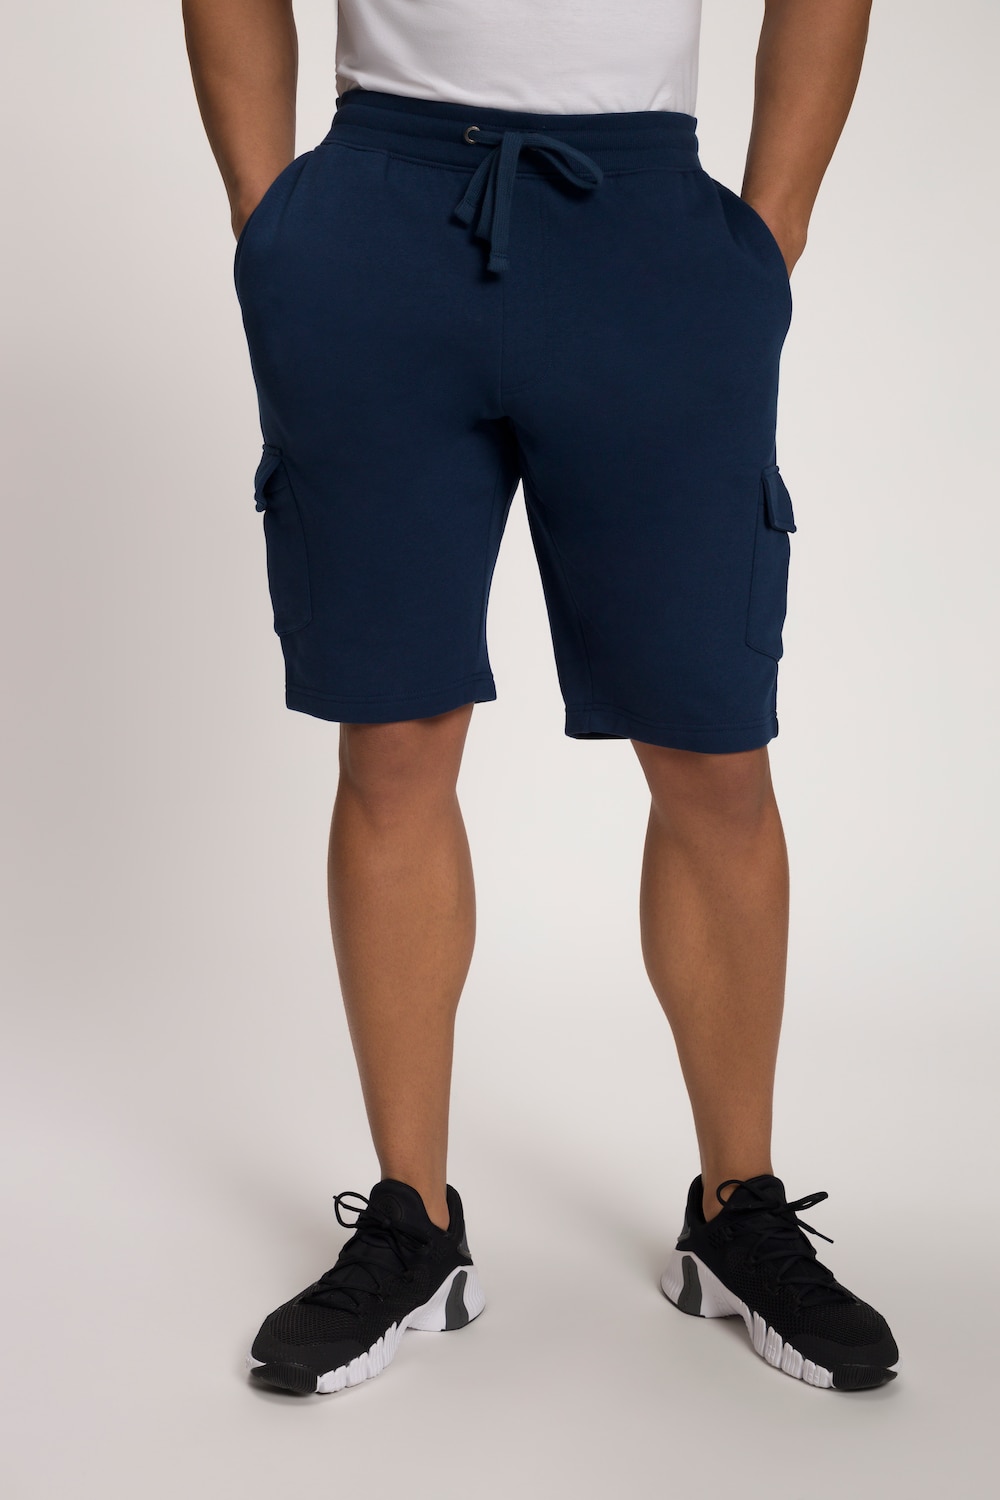 Grote Maten korte sweatbroek, Heren, blauw, Maat: XL, Katoen/Polyester, JP1880